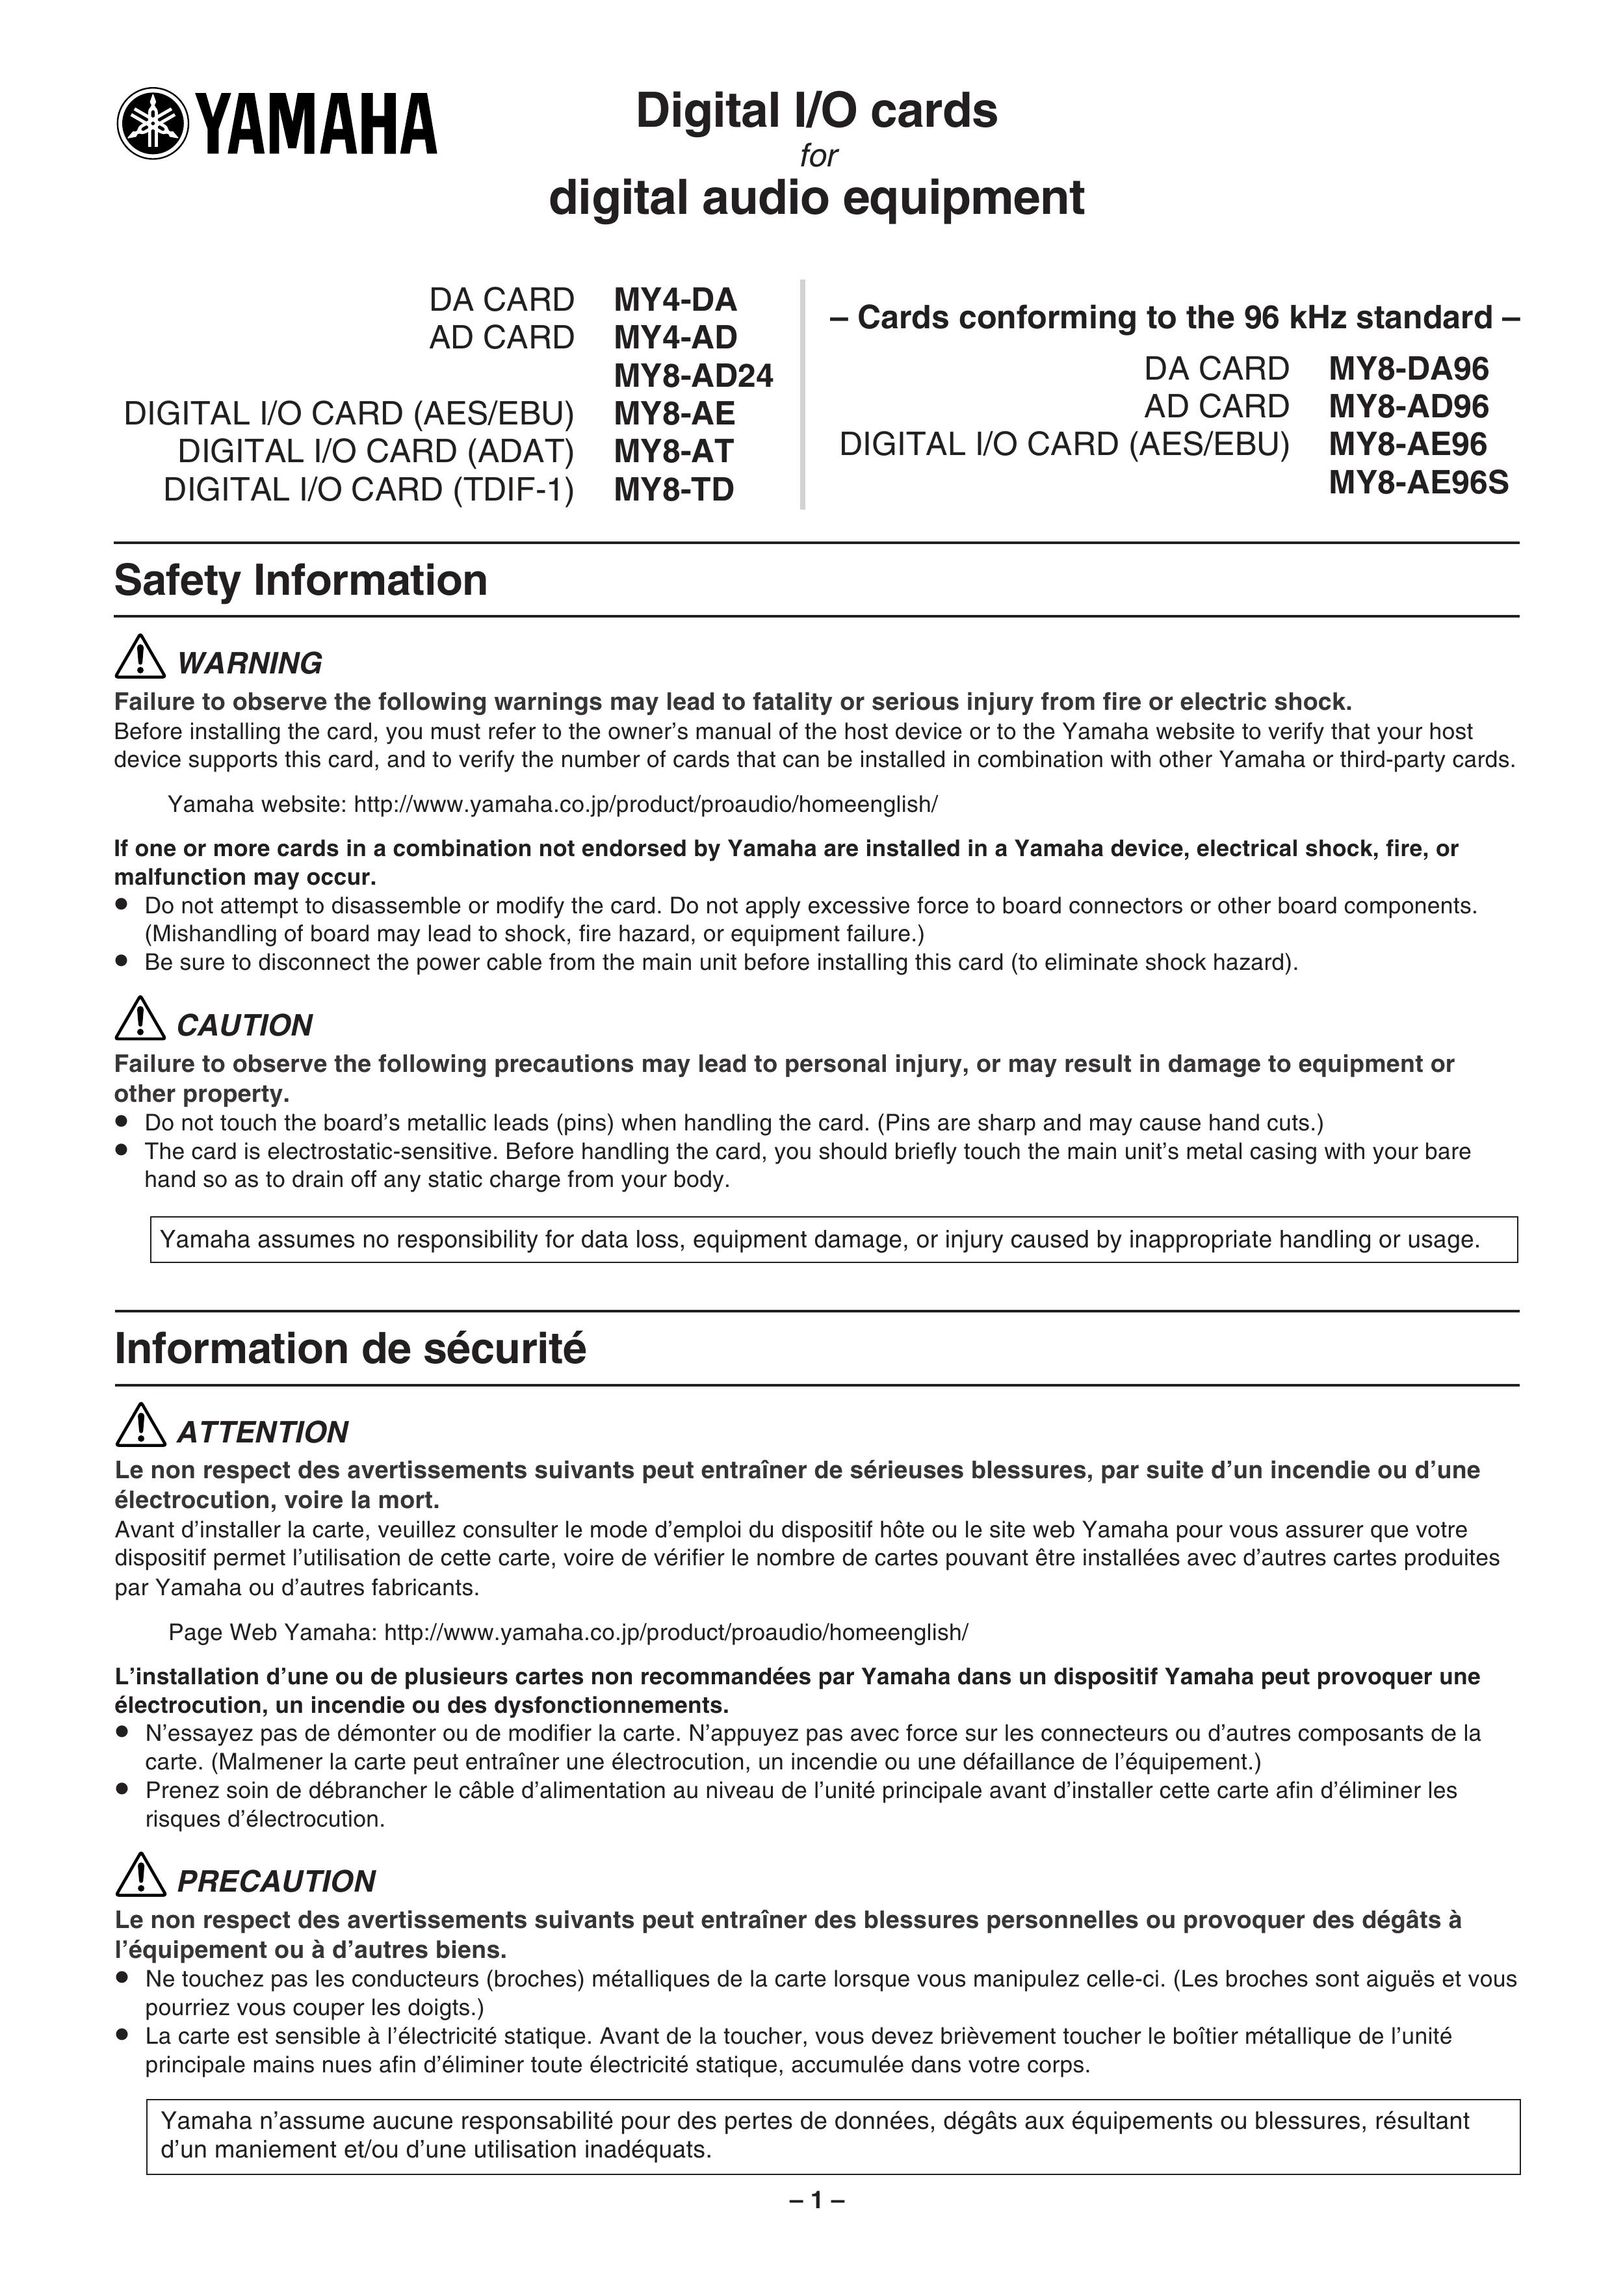 Yamaha MY4-DA Computer Hardware User Manual